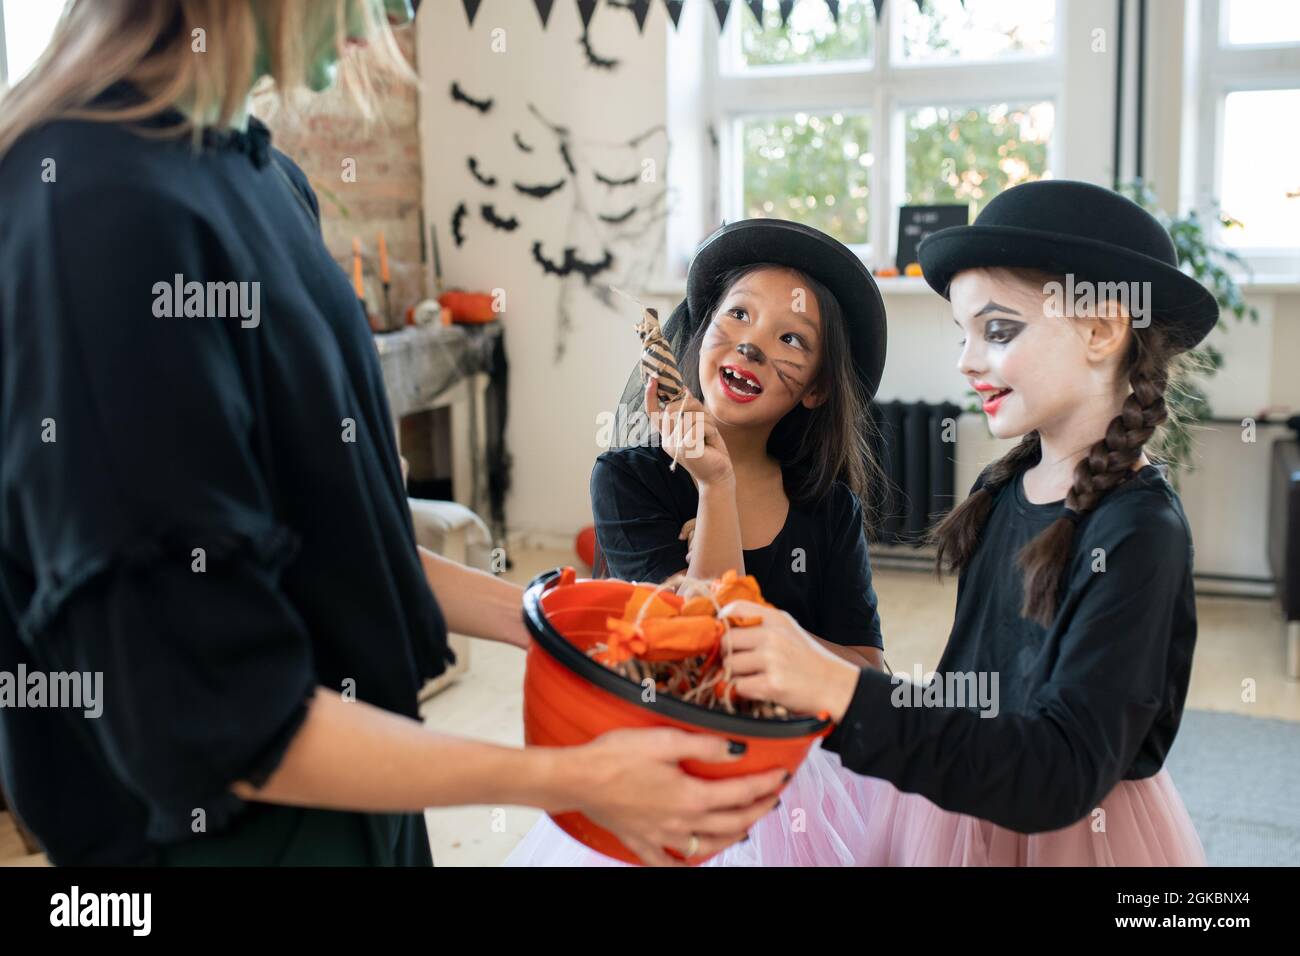 Zwei Mädchen mit bemalten Gesichtern bitten eine junge Frau in schwarzer Kleidung um Halloween-Leckereien Stockfoto